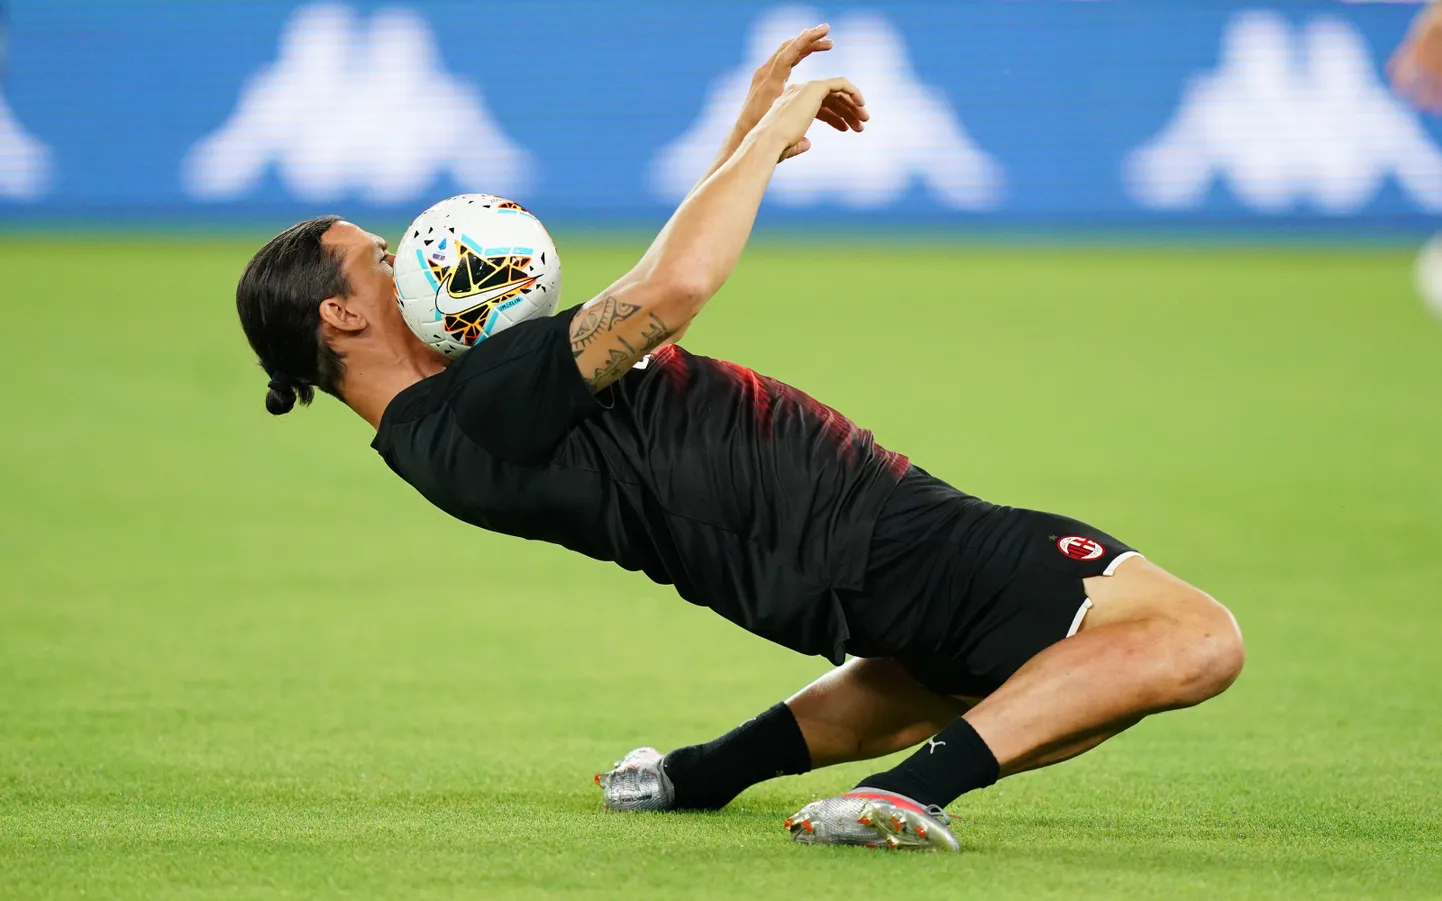 Rootsi vutilegend Zlatan Ibrahimovic teeb palliga, mis ise tahab.